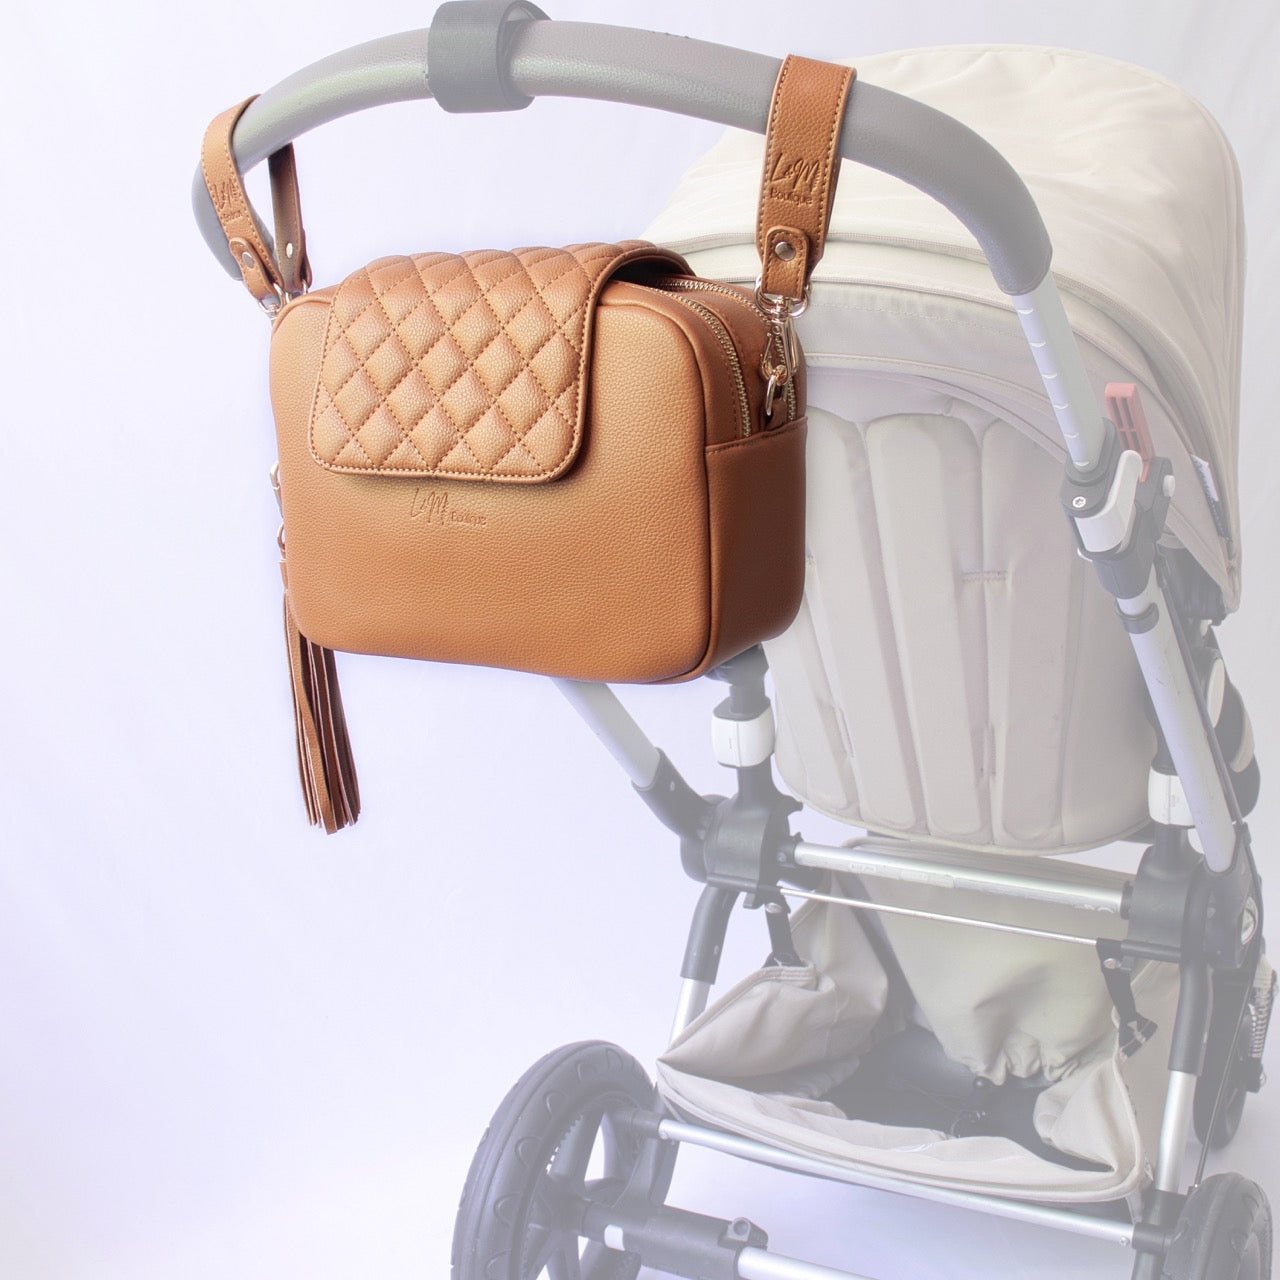 Kaia Nappy Bag converted into a stroller caddy